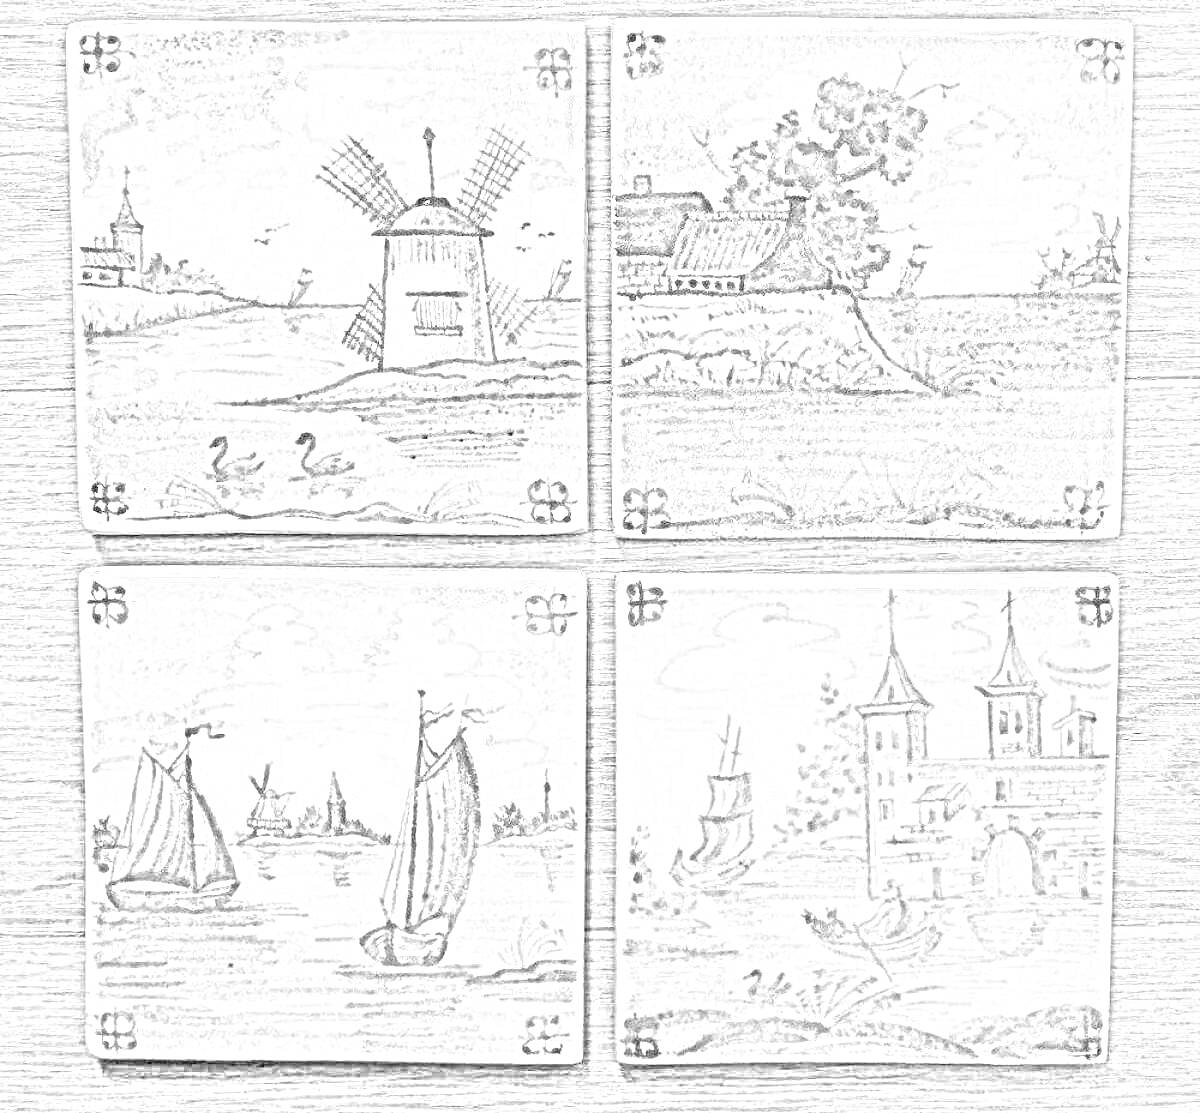 Керамическая плитка ручной работы с пейзажами и морскими видами: мельница, деревенский дом с деревом, парусники на воде и замок с башнями и морем